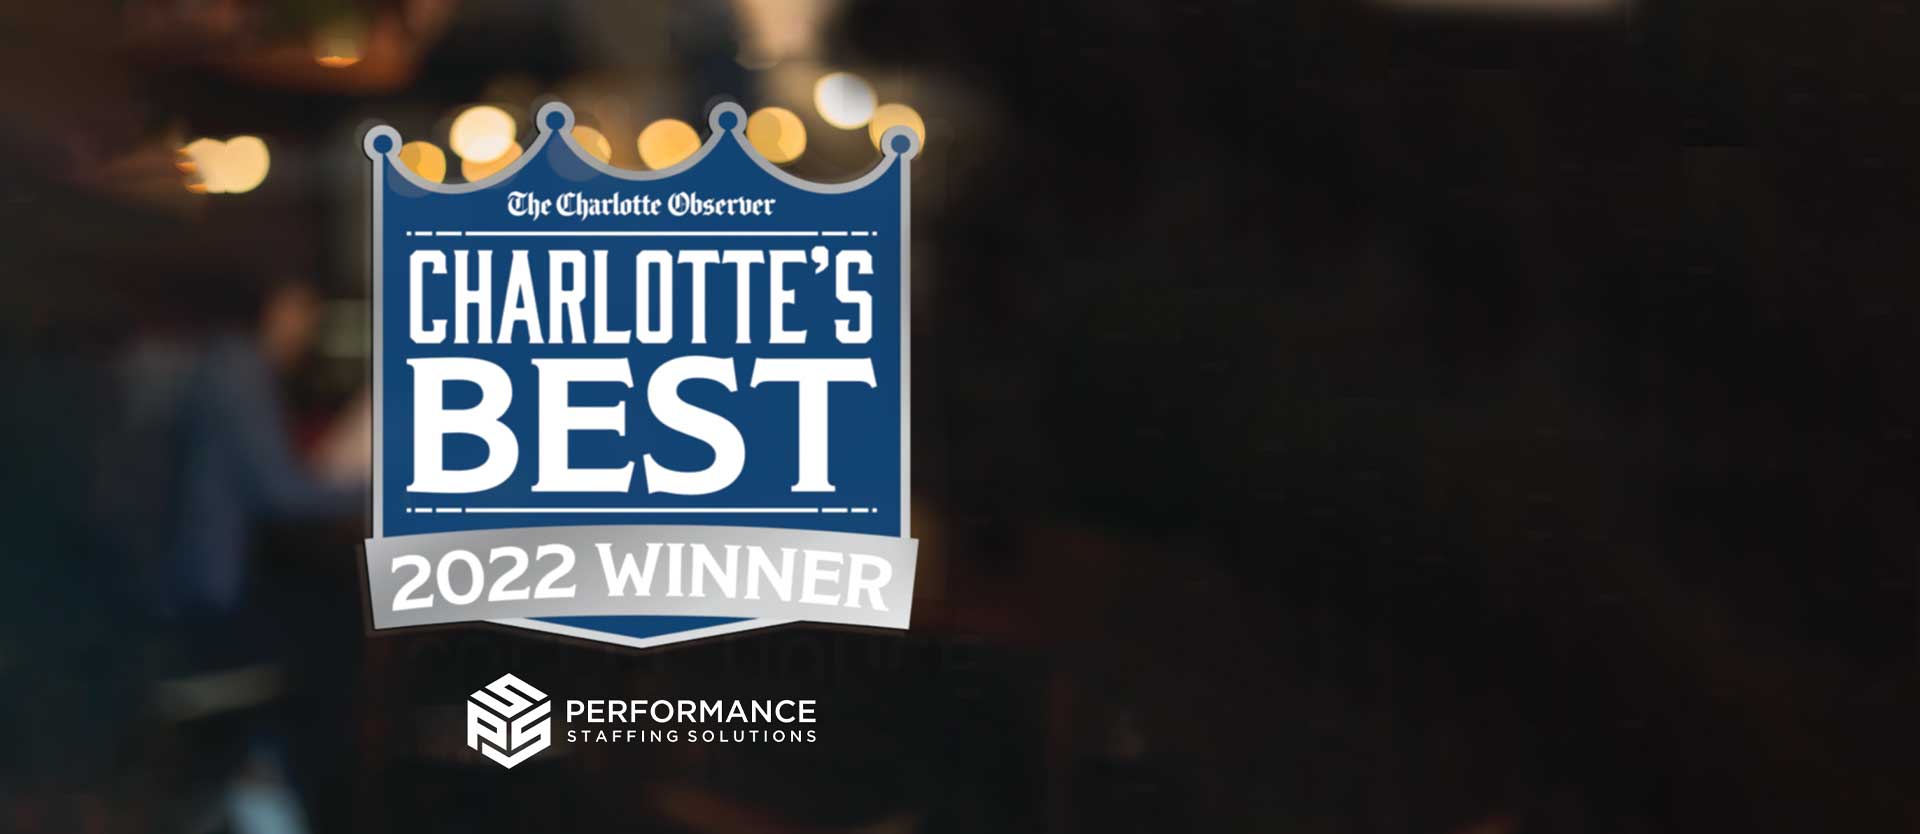 Performance Staffing Solutions Named 2022 Charlotte’s Best Winner